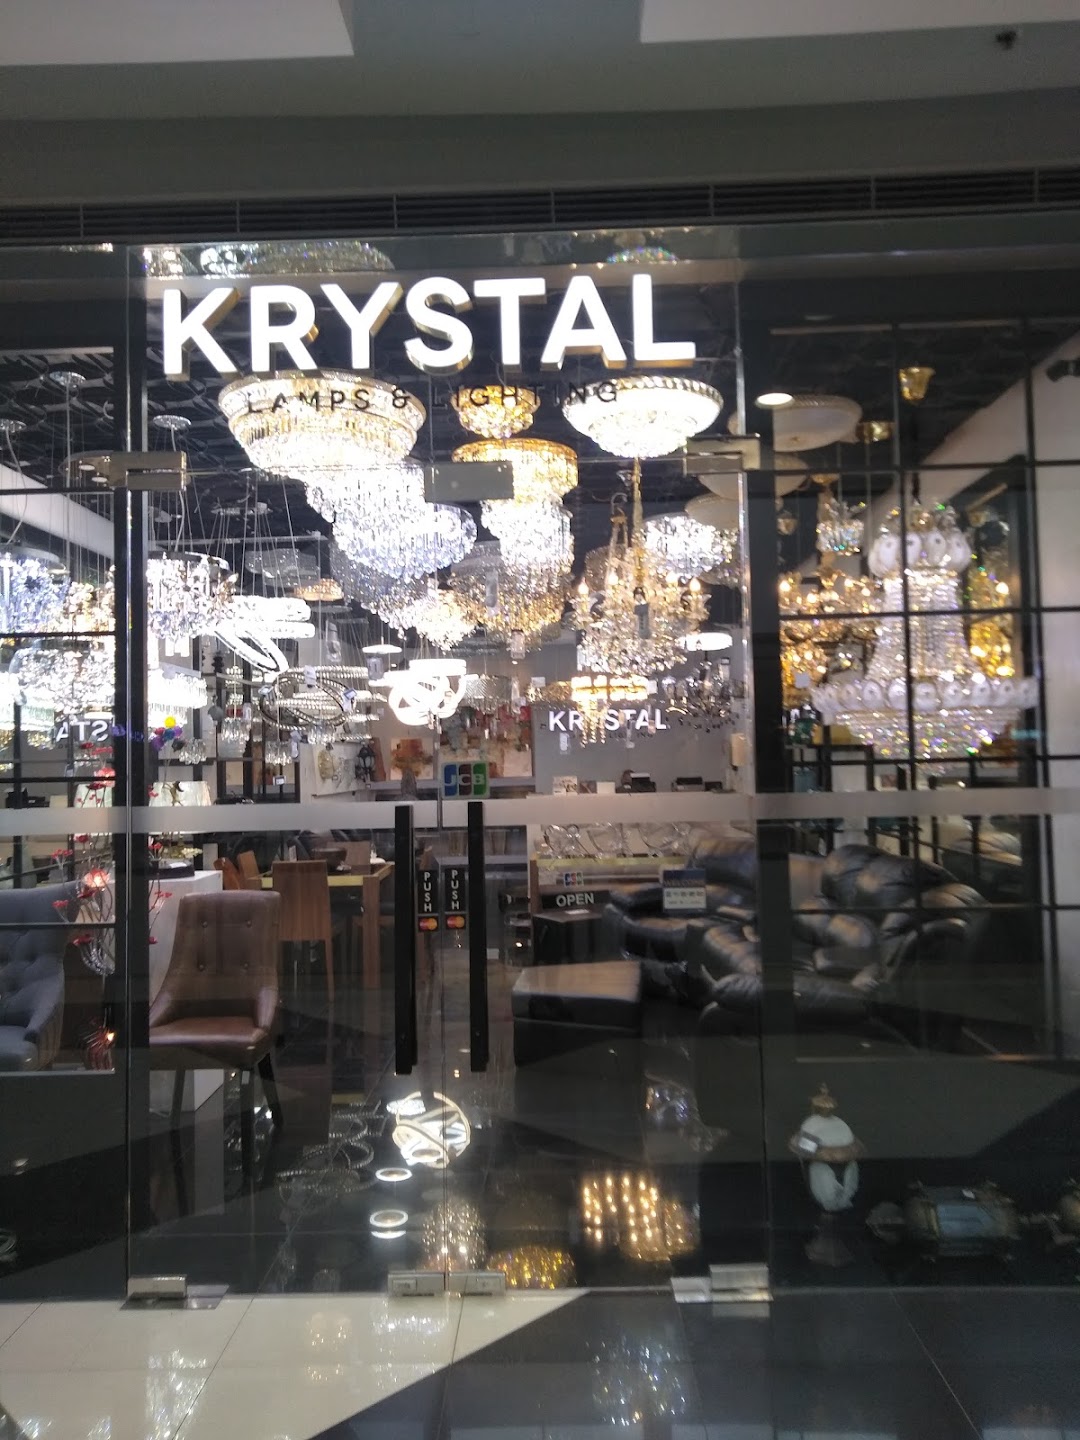 Krystal Lamps & Lightings